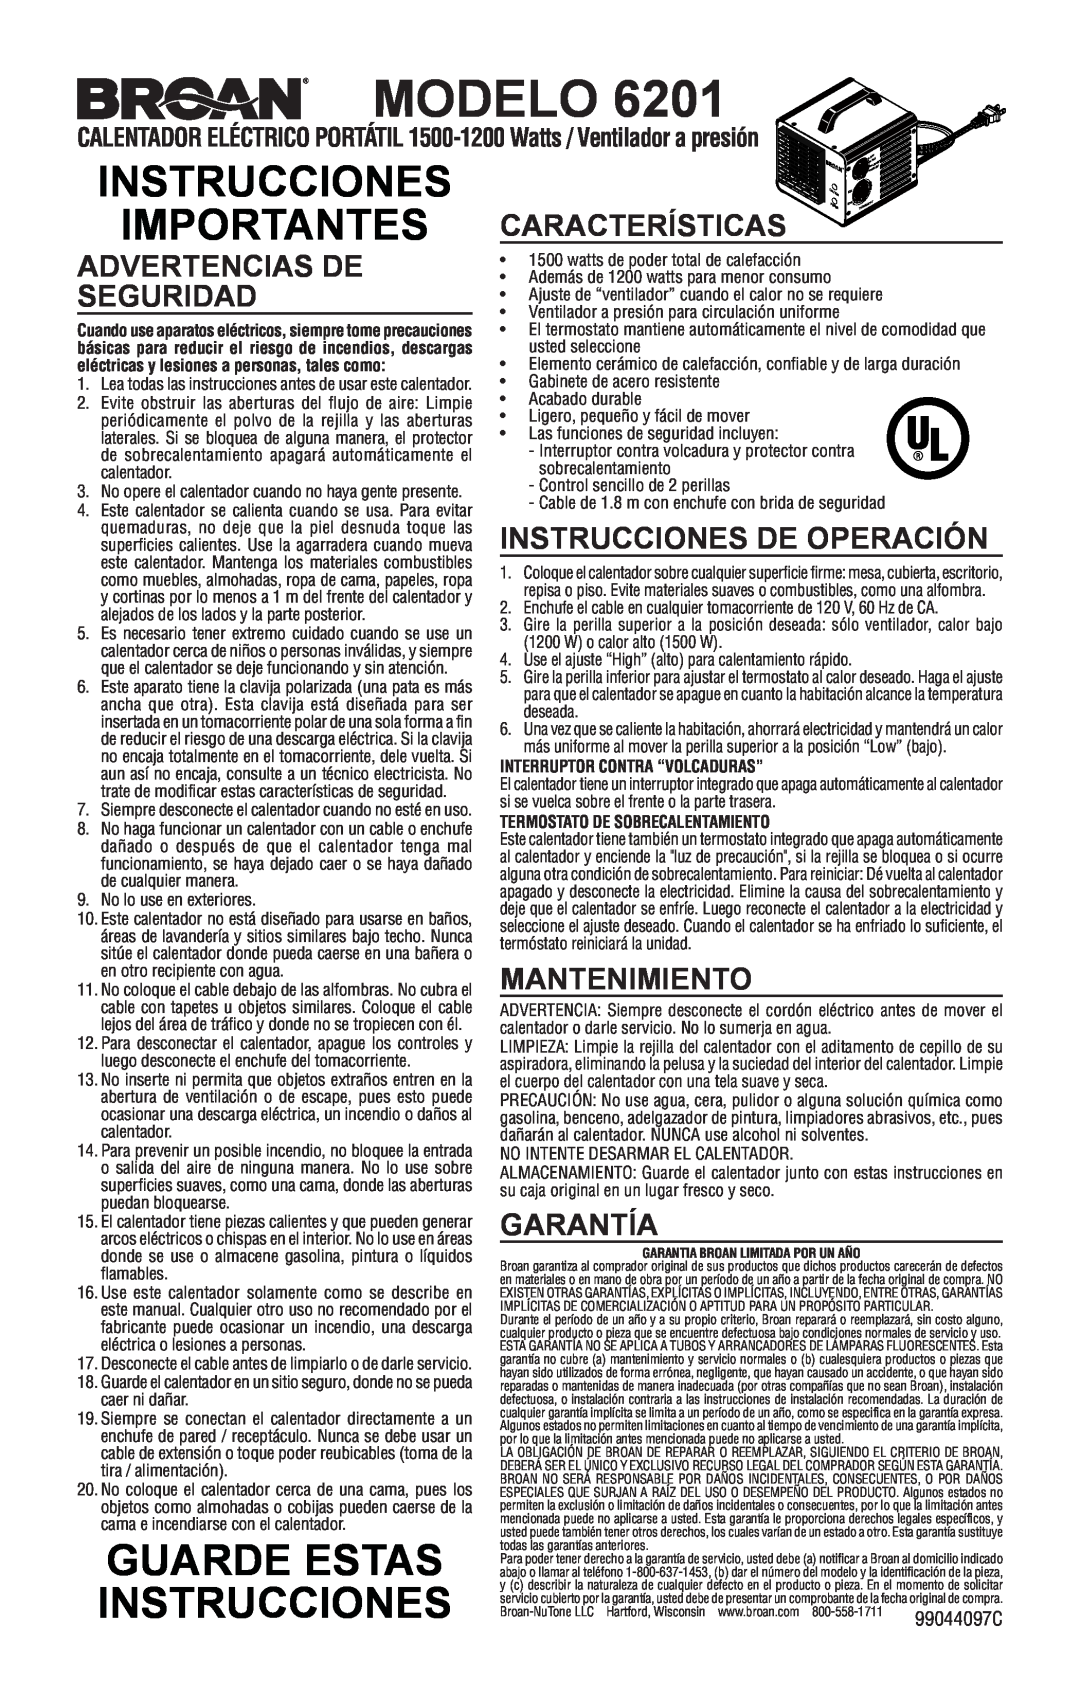 Broan 6201 Modelo, Importantes Características, Advertencias De Seguridad, Instrucciones De Operación, Mantenimiento 